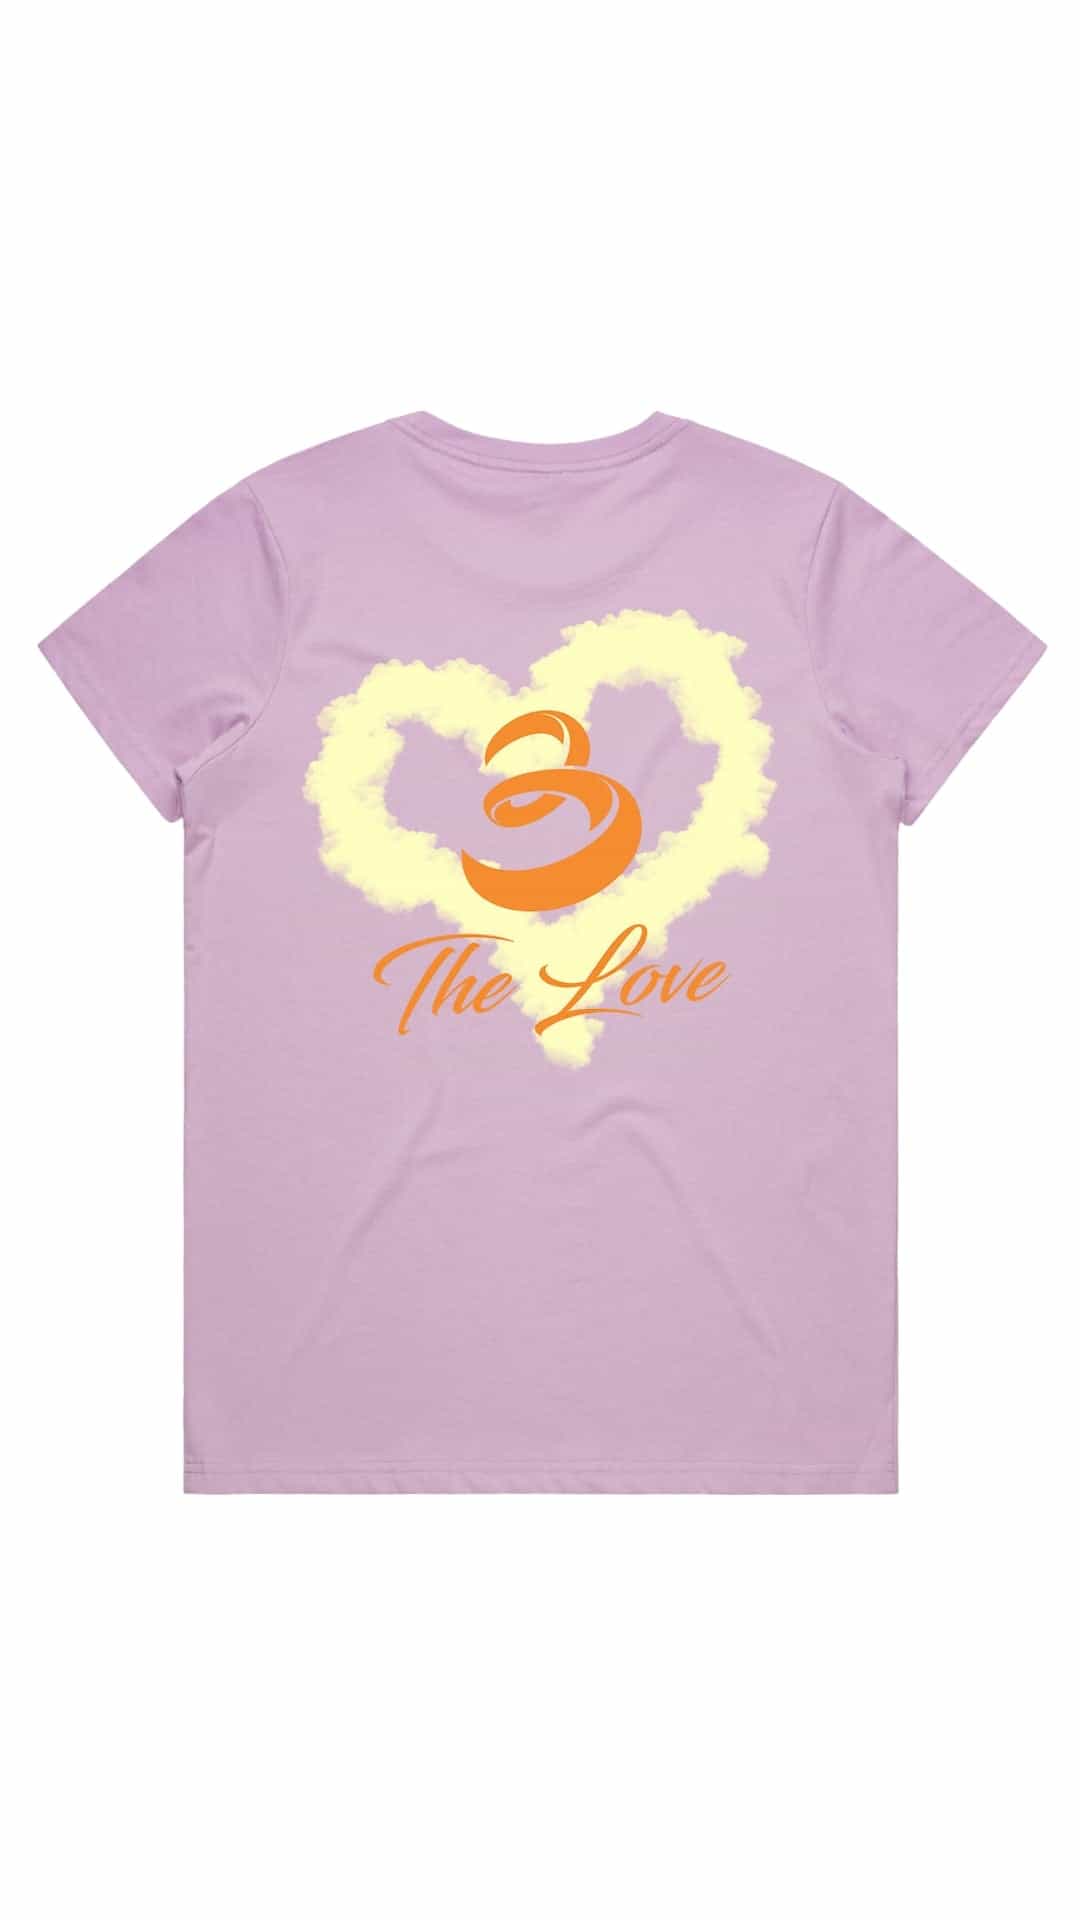 colorful LV heart t-shirt  Shirts, Louis vuitton t shirt, T shirt